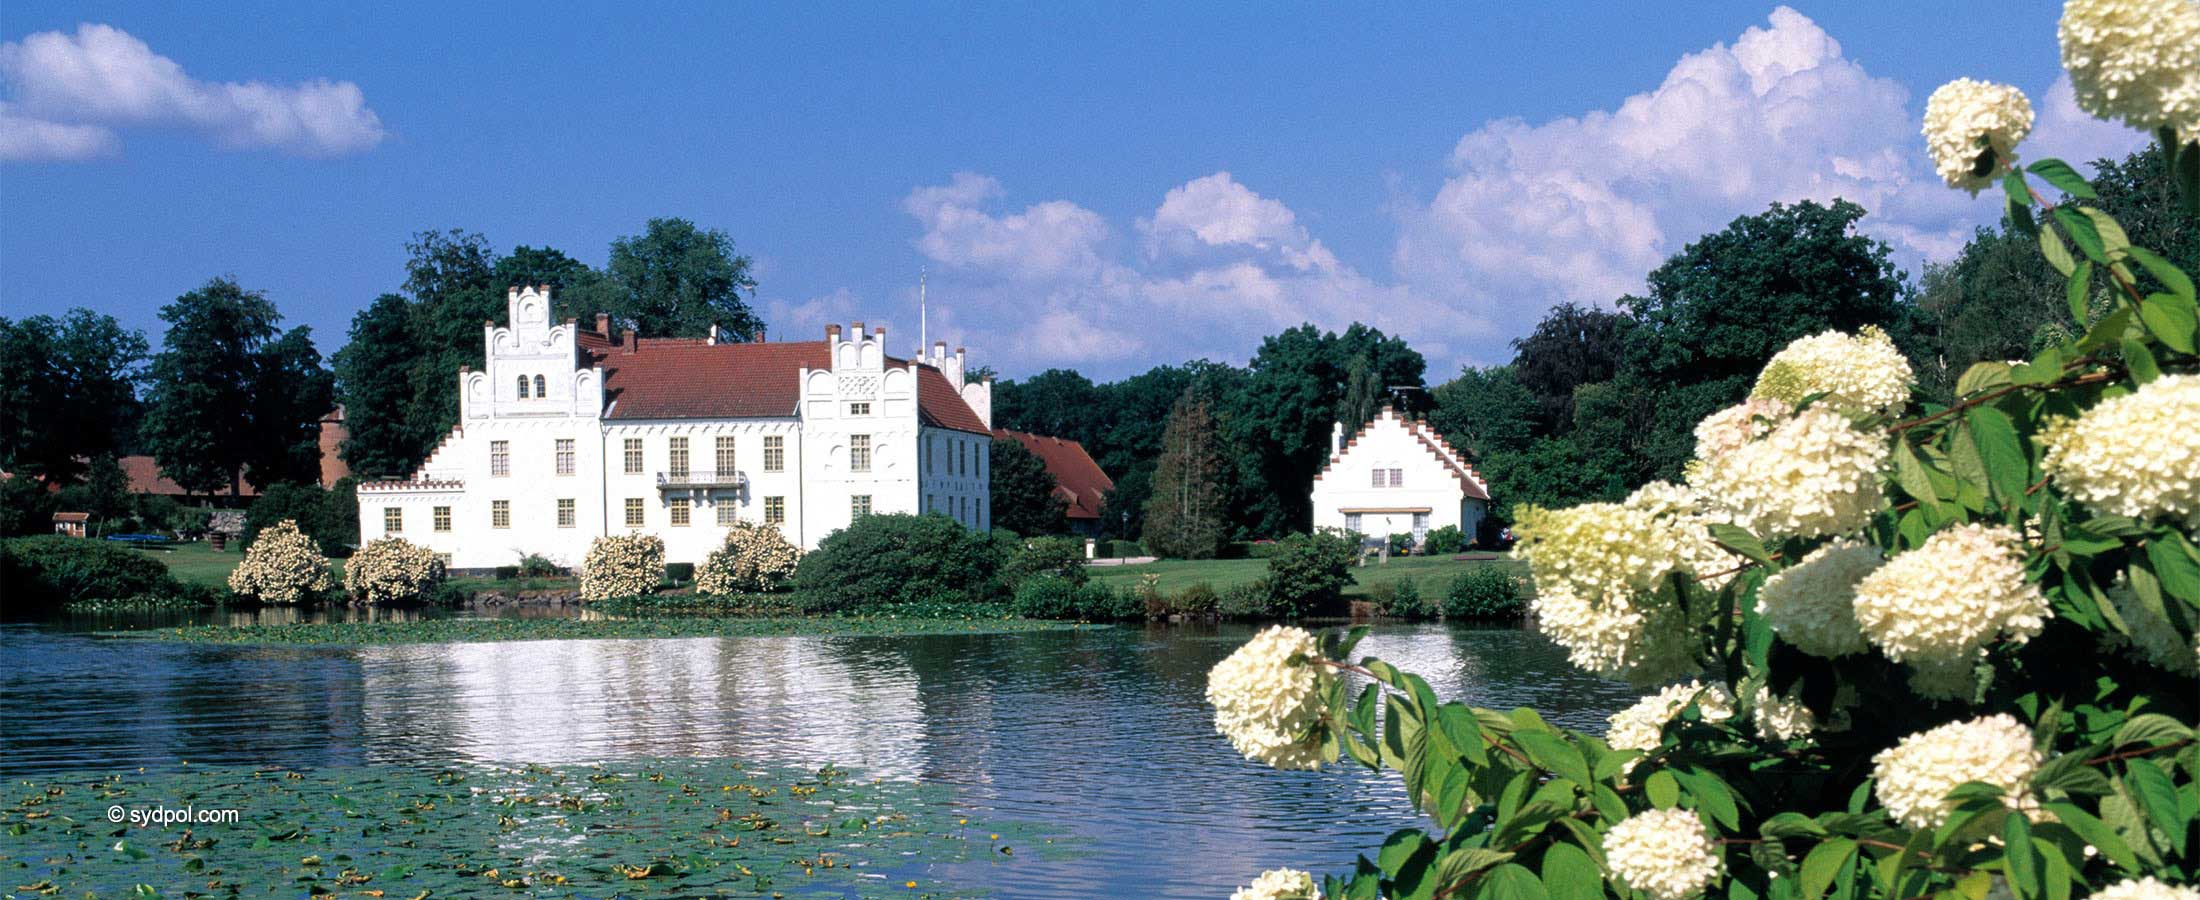 Romantischee Schloss in Skåne in Schweden